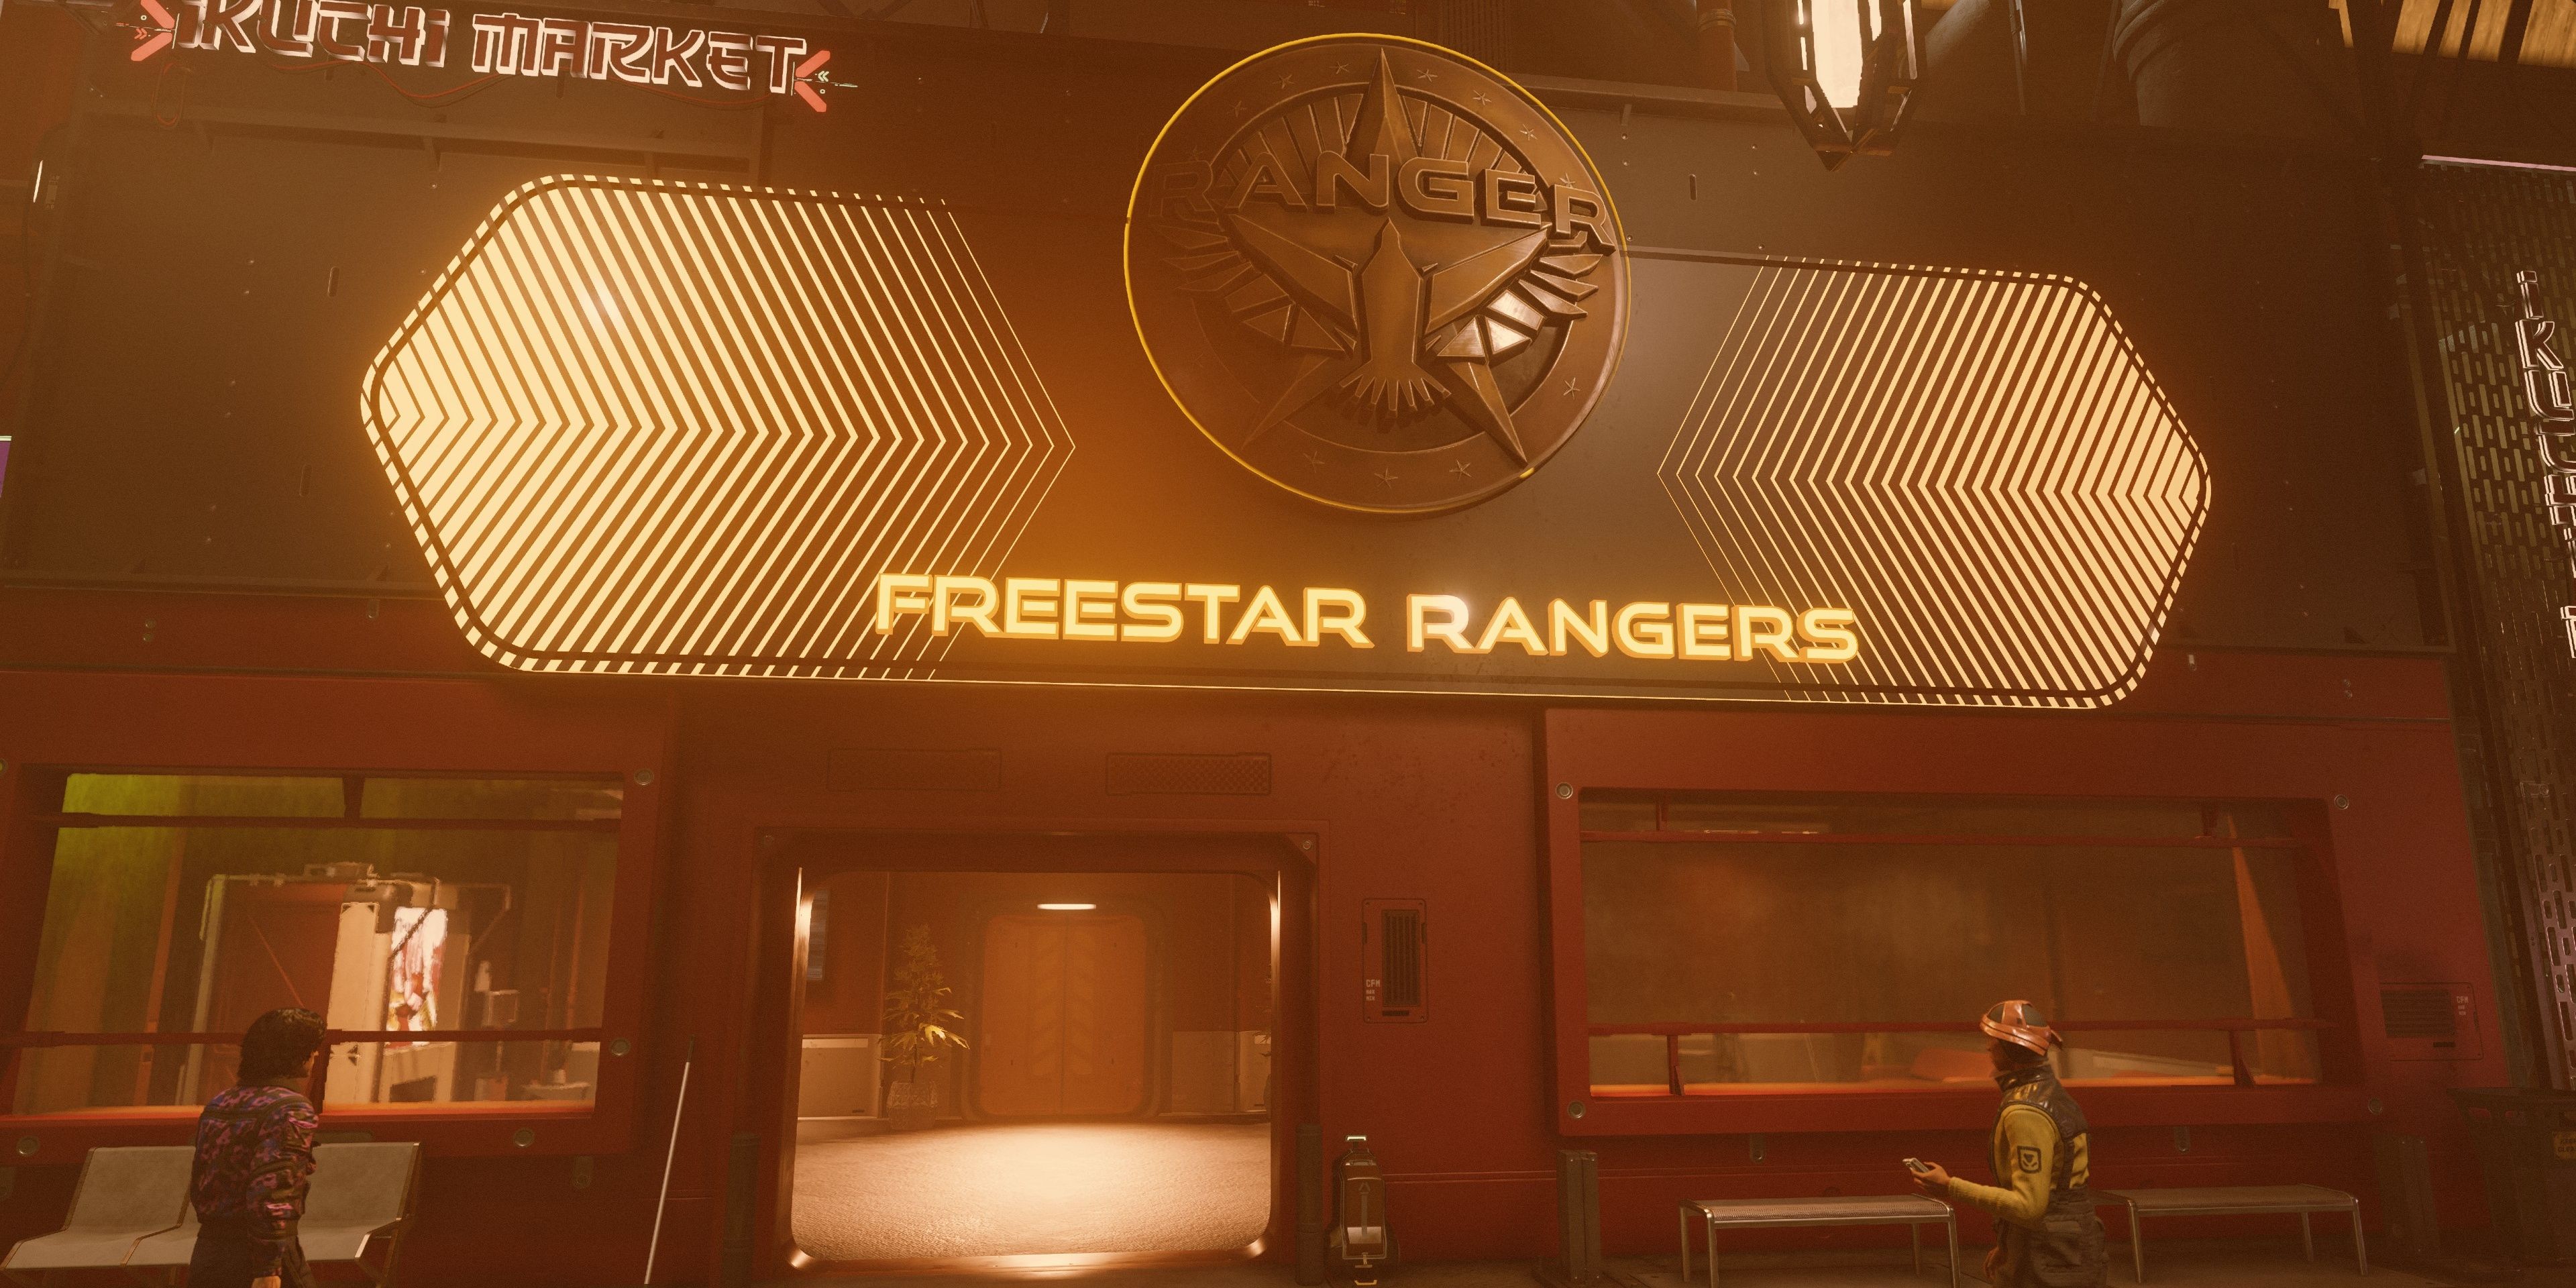 Oficinas de Freestar Rangers en neón.